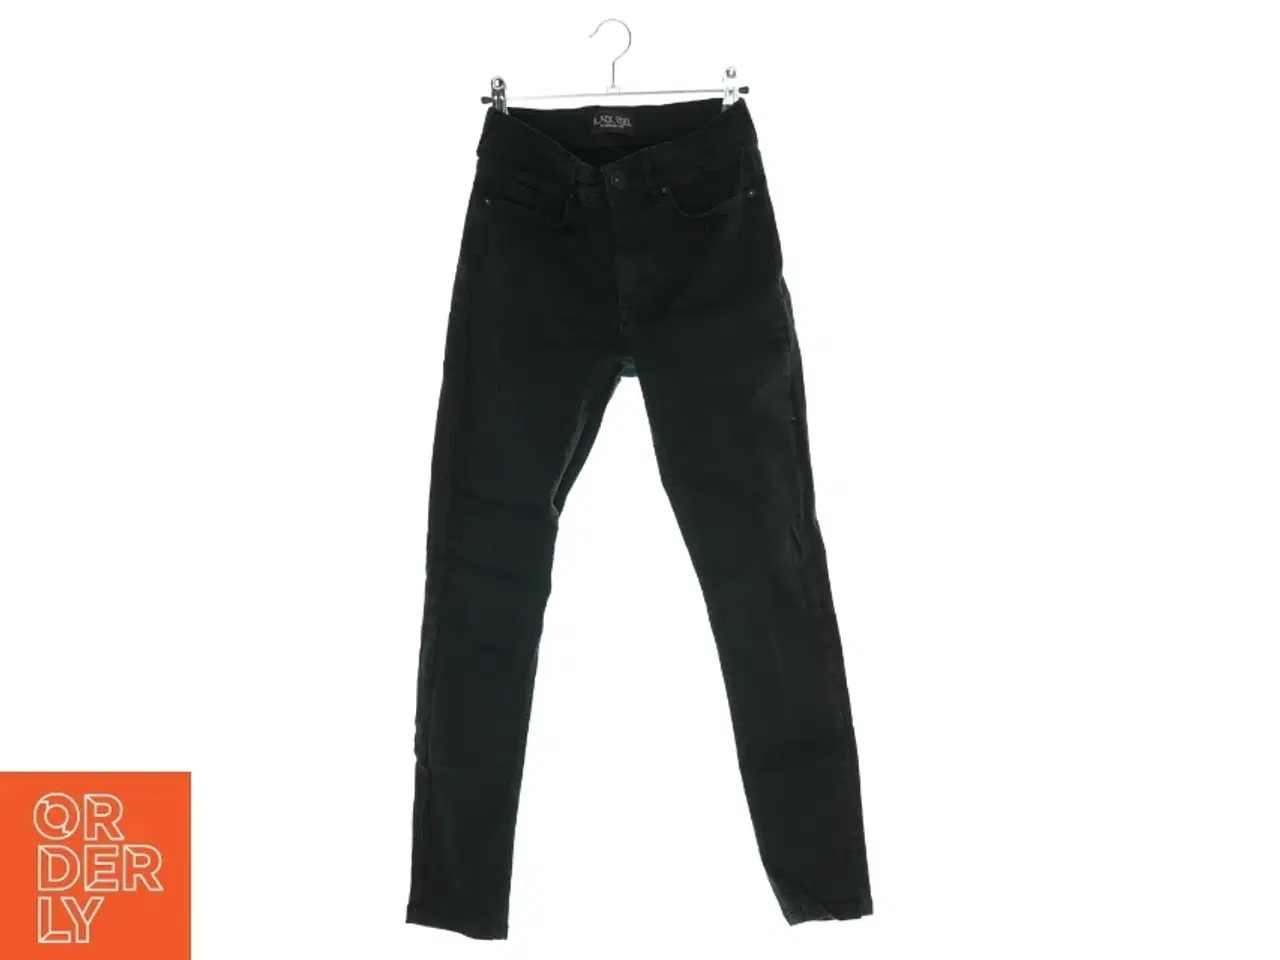 Billede 1 - Jeans fra Black Rebel (str. XS ca. 14 år)